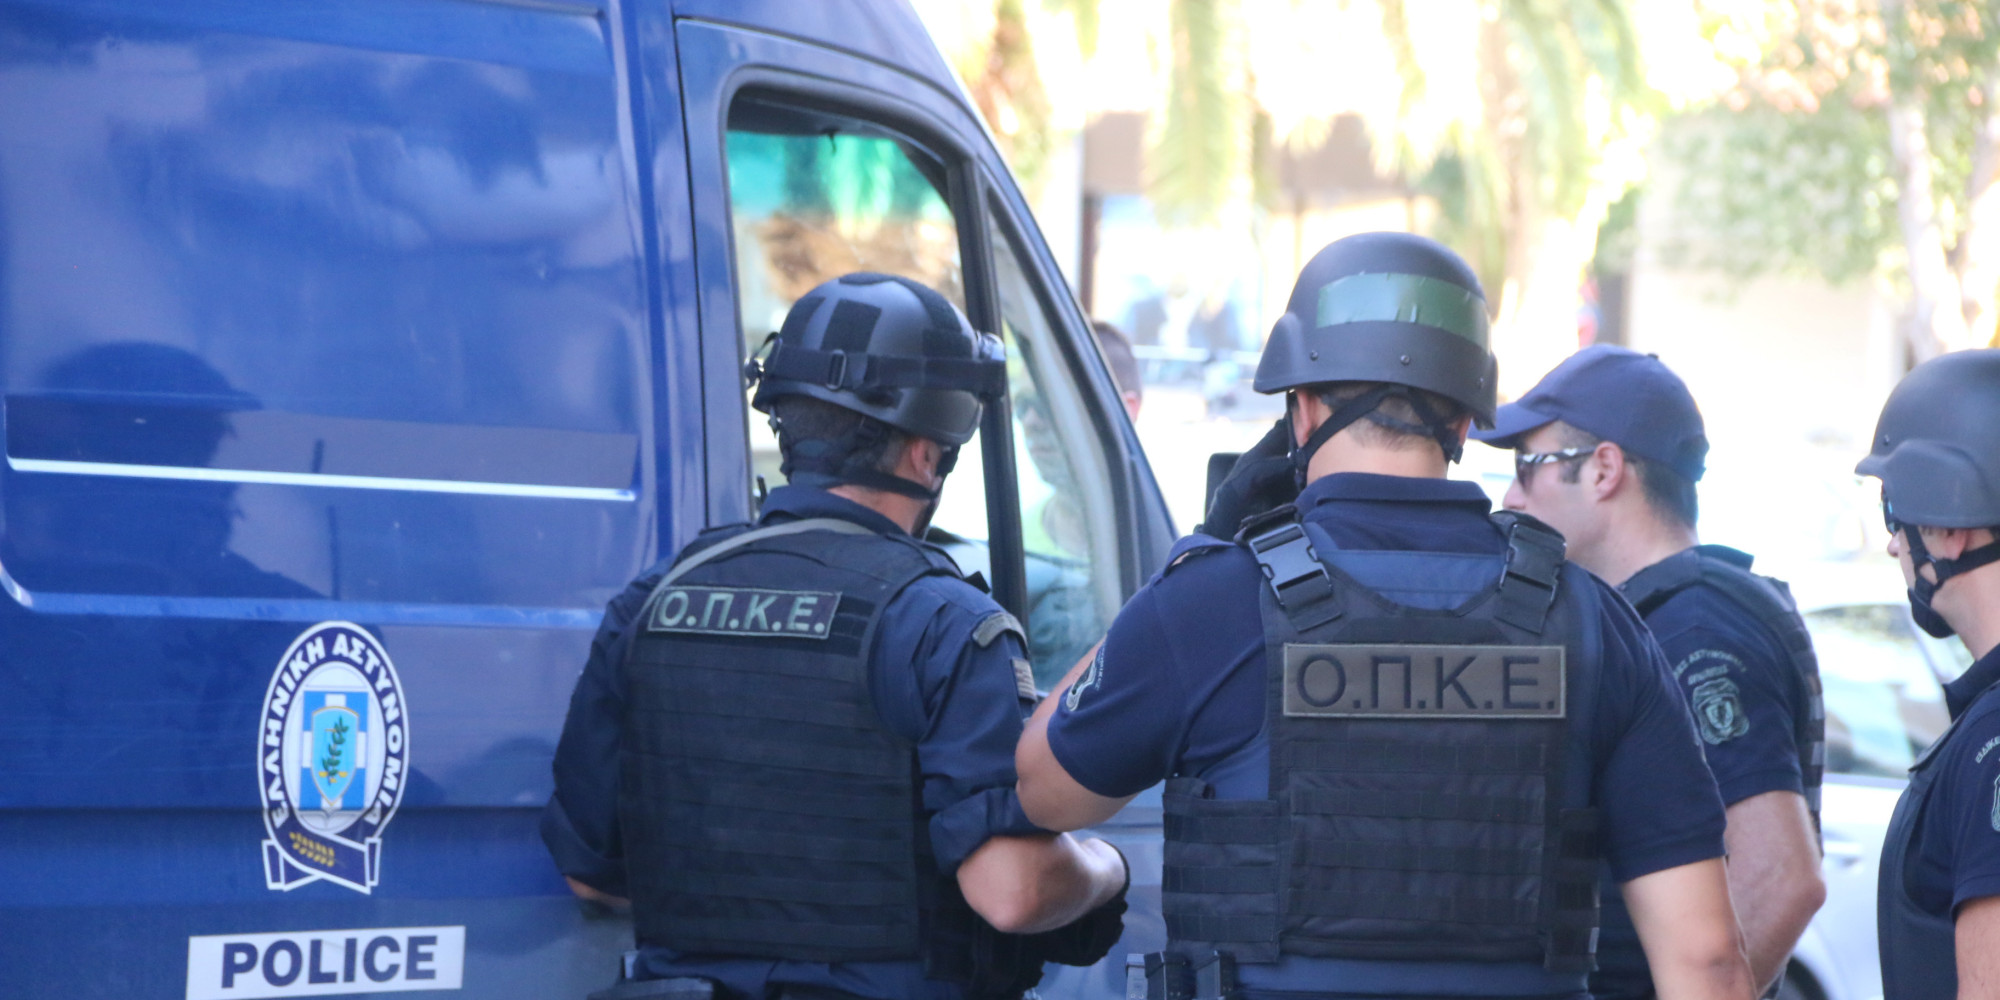 Σύλληψη δύο Αλβανών που πέρασαν τα σύνορα με μεγάλη ποσότητα κάνναβης